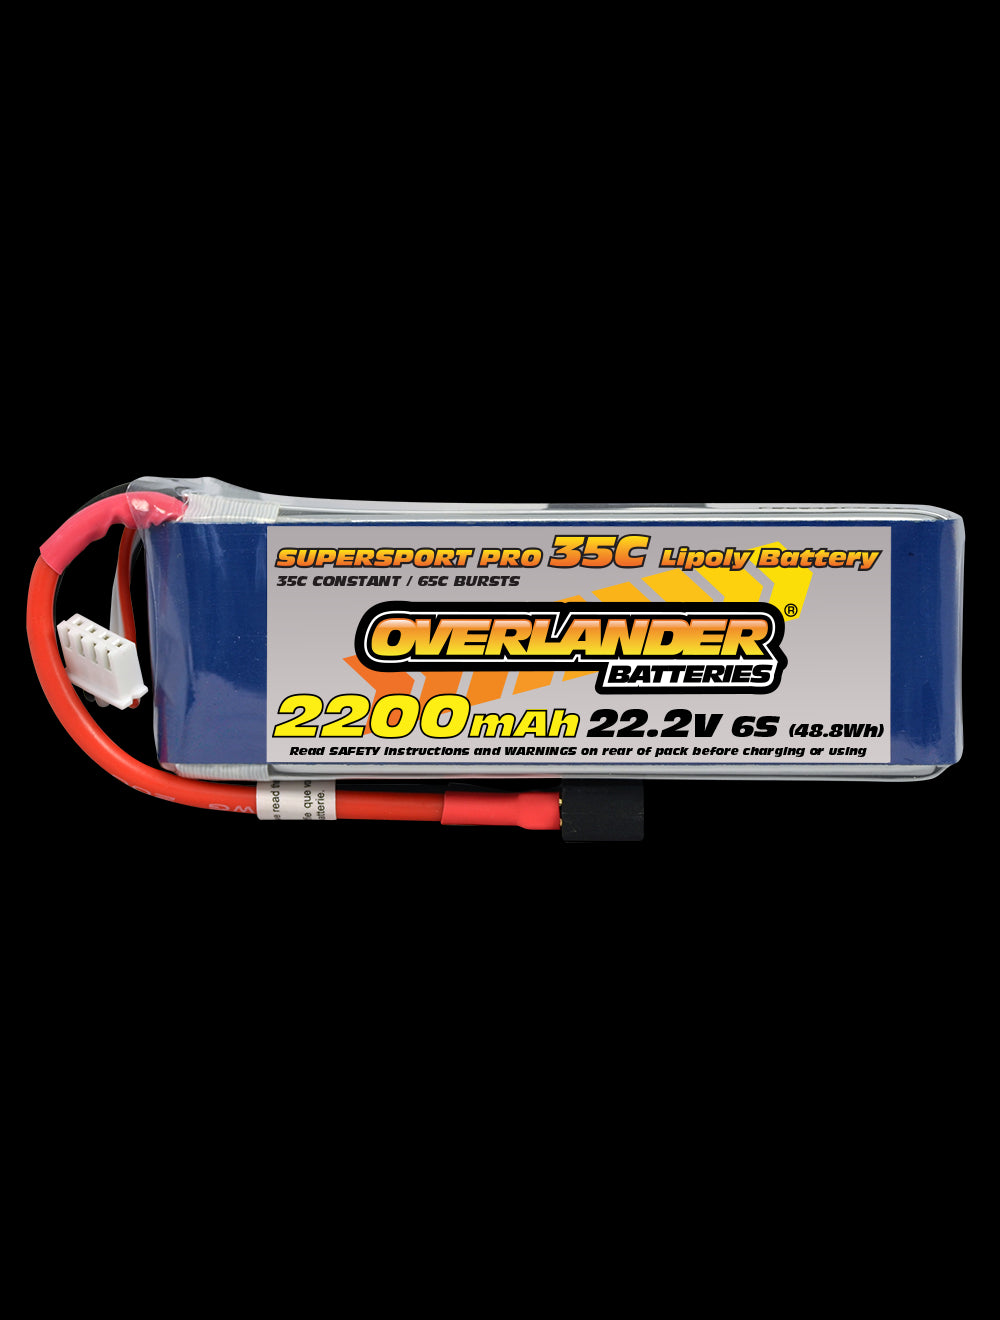 Overlander 2200mAh 22.2V 6S 35C Supersport Pro LiPo Battery - EC3 Connector 2895